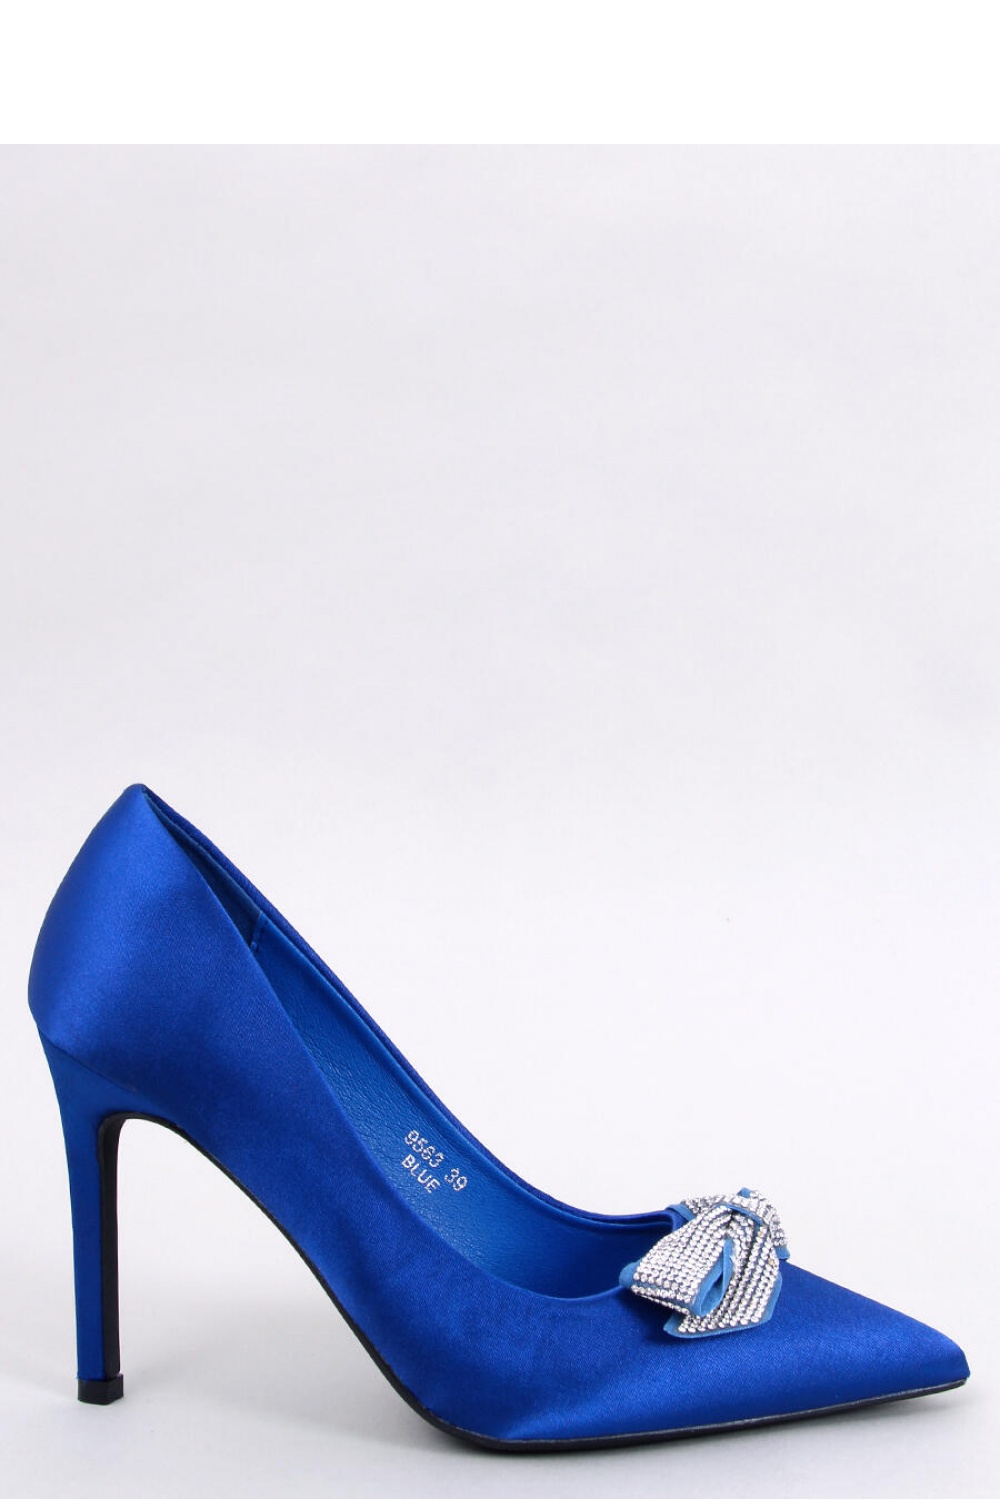 High heels model 181872 Inello